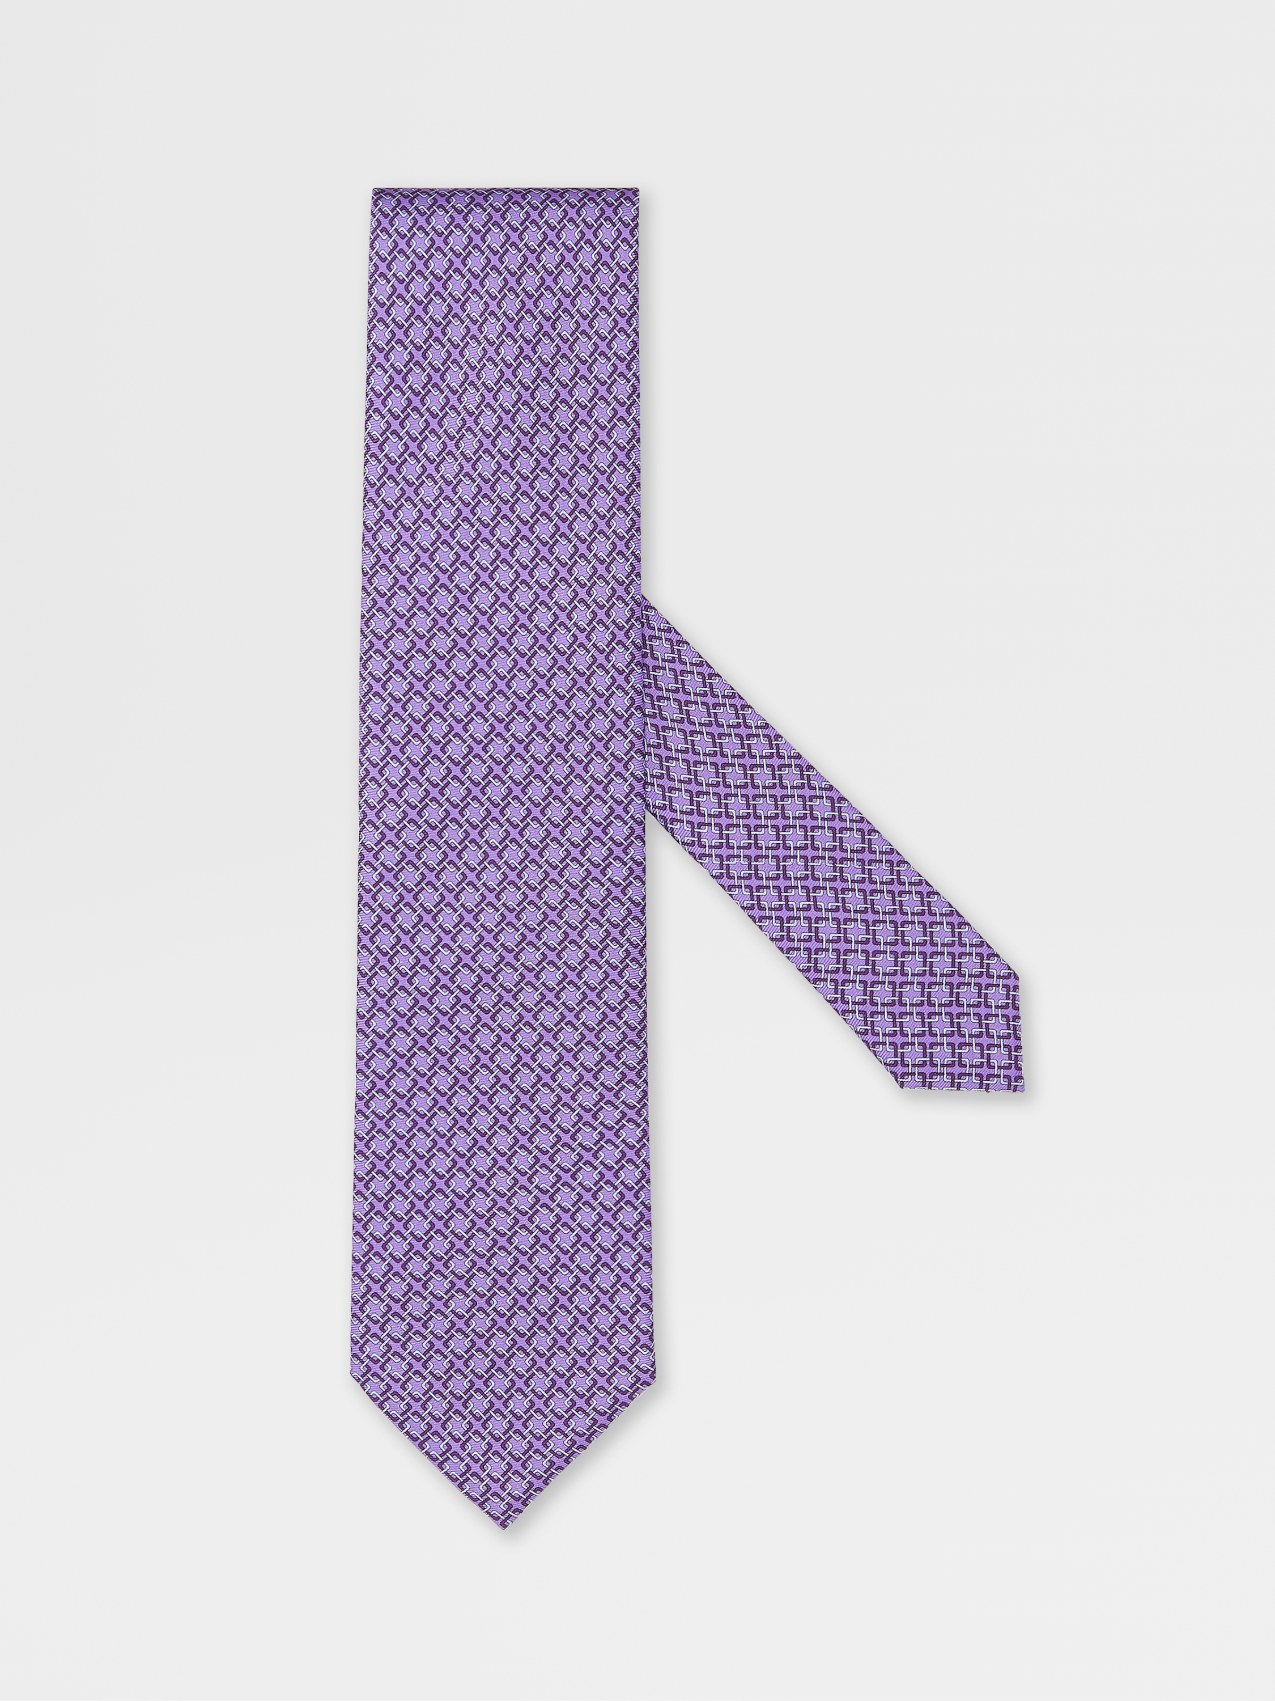 紫罗兰色桑蚕丝领带